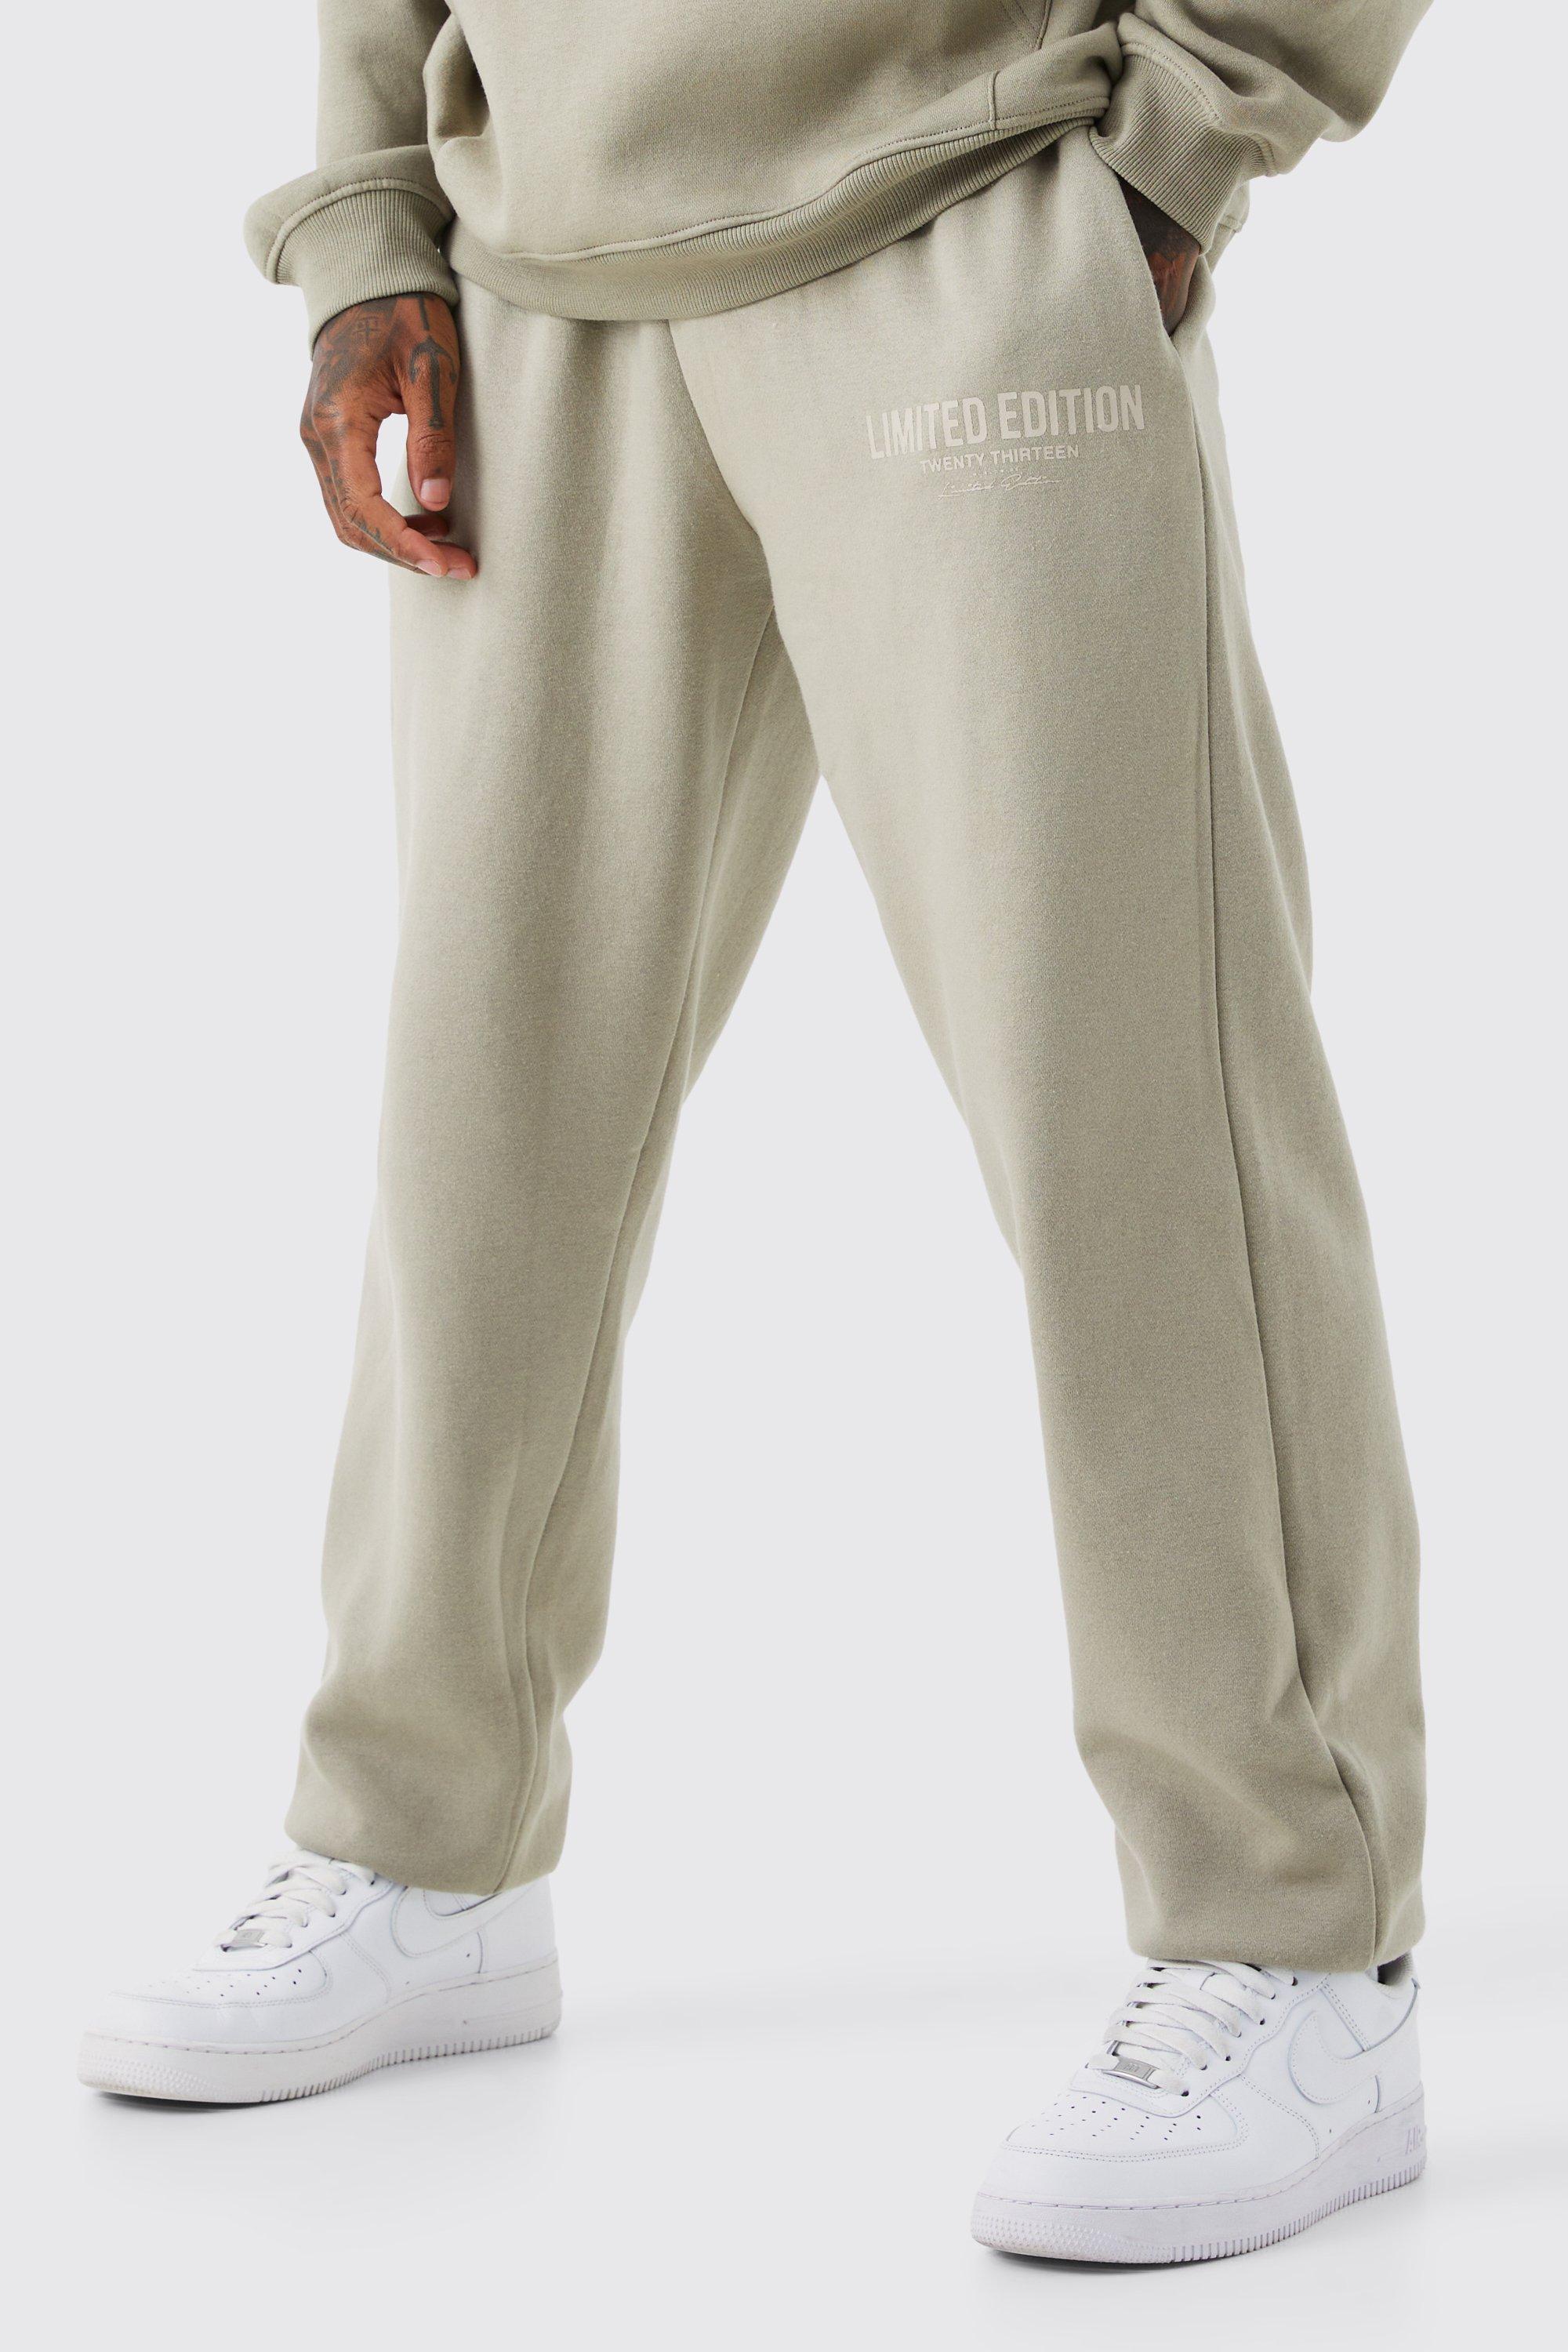 Image of Pantaloni tuta oversize Limited Edition con stampa di testo, Beige